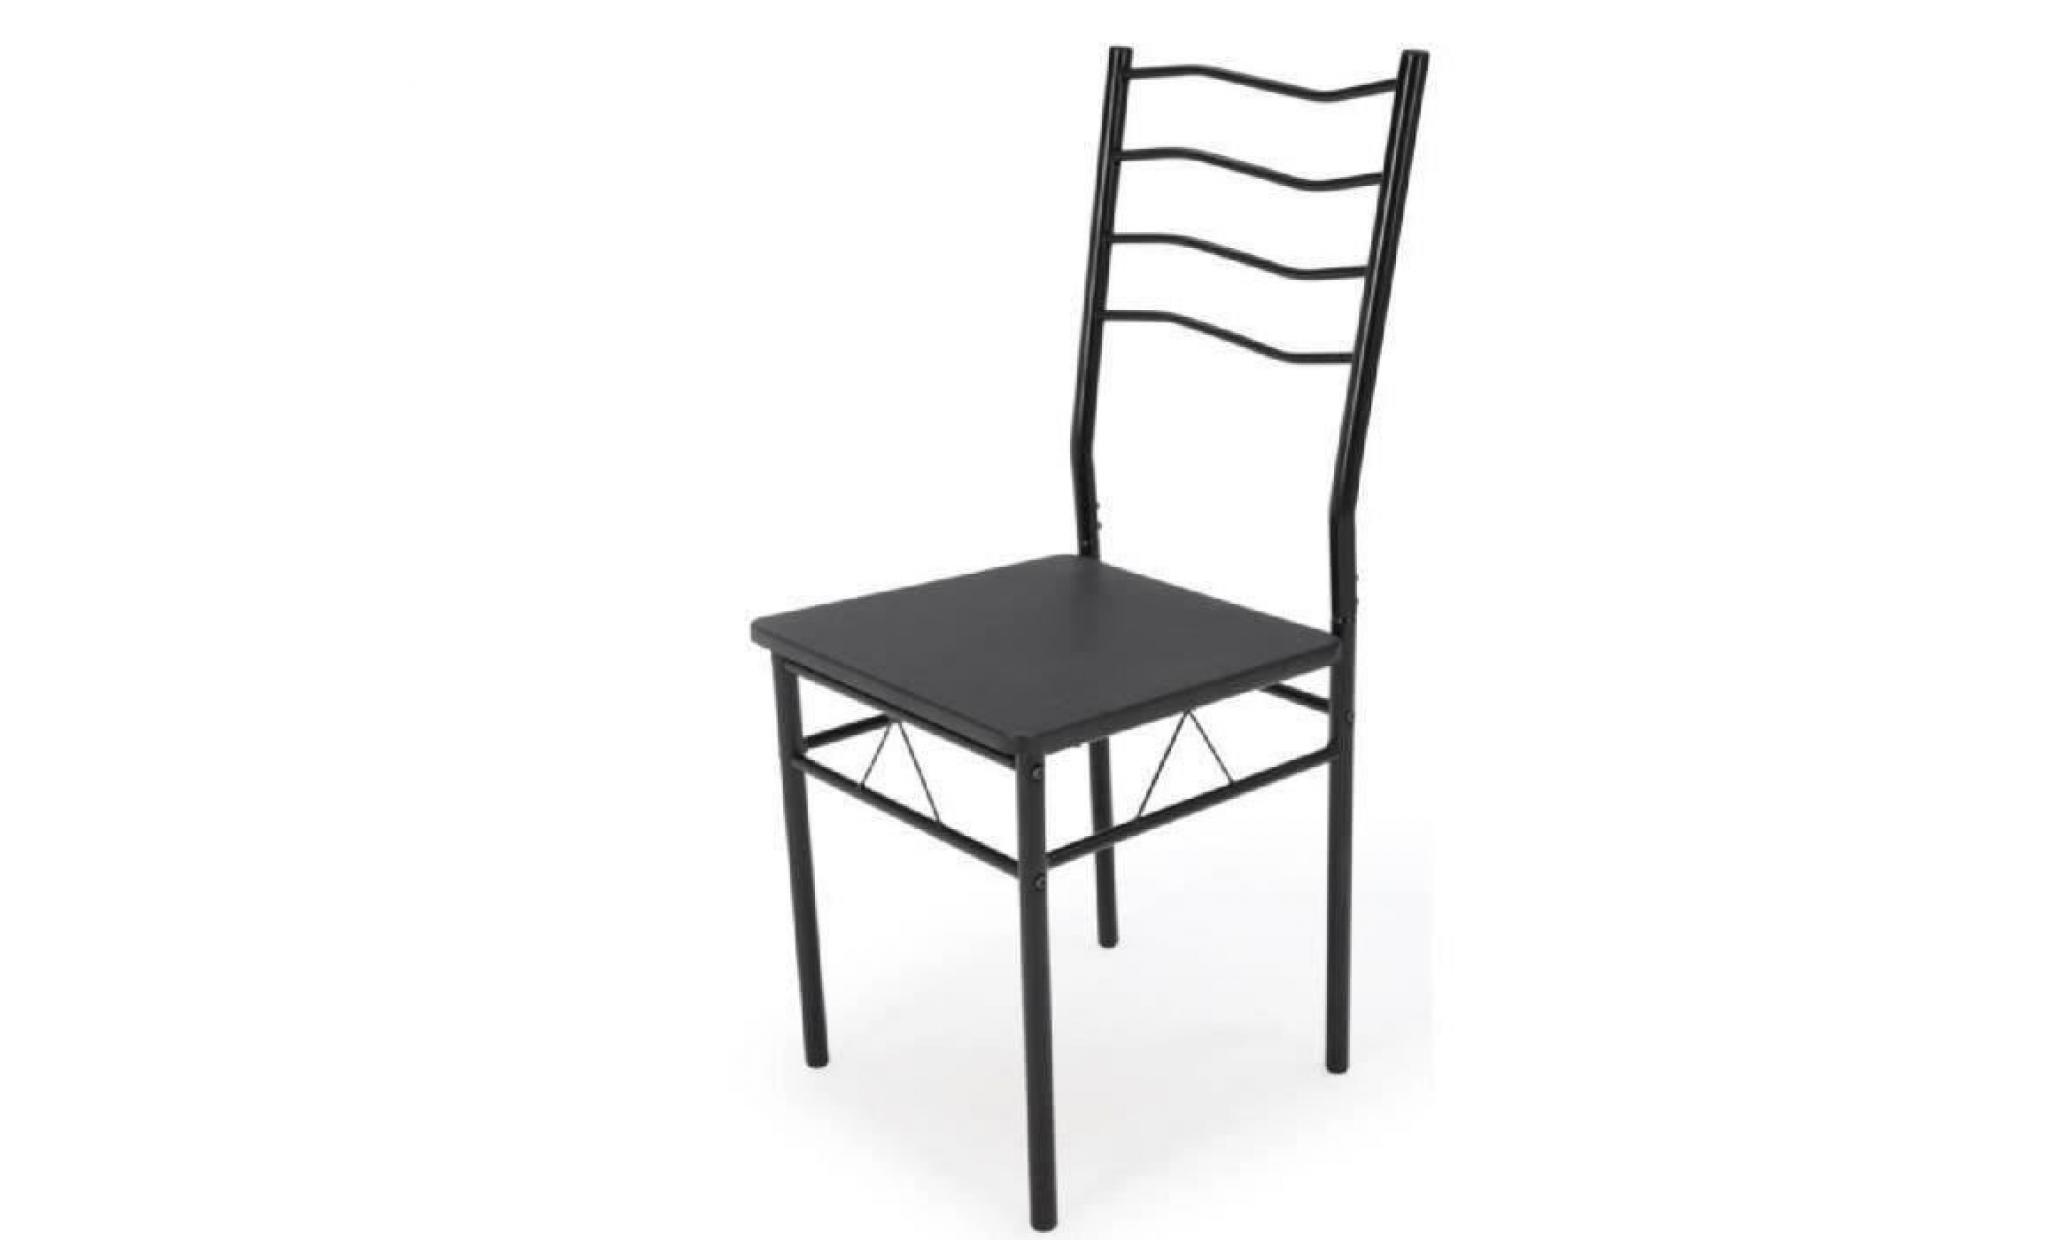 nina ensemble table à manger de 4 à 6 personnes + 4 chaises   contemporain   en métal et mdf noir laqué   l 120 x l 70 cm pas cher